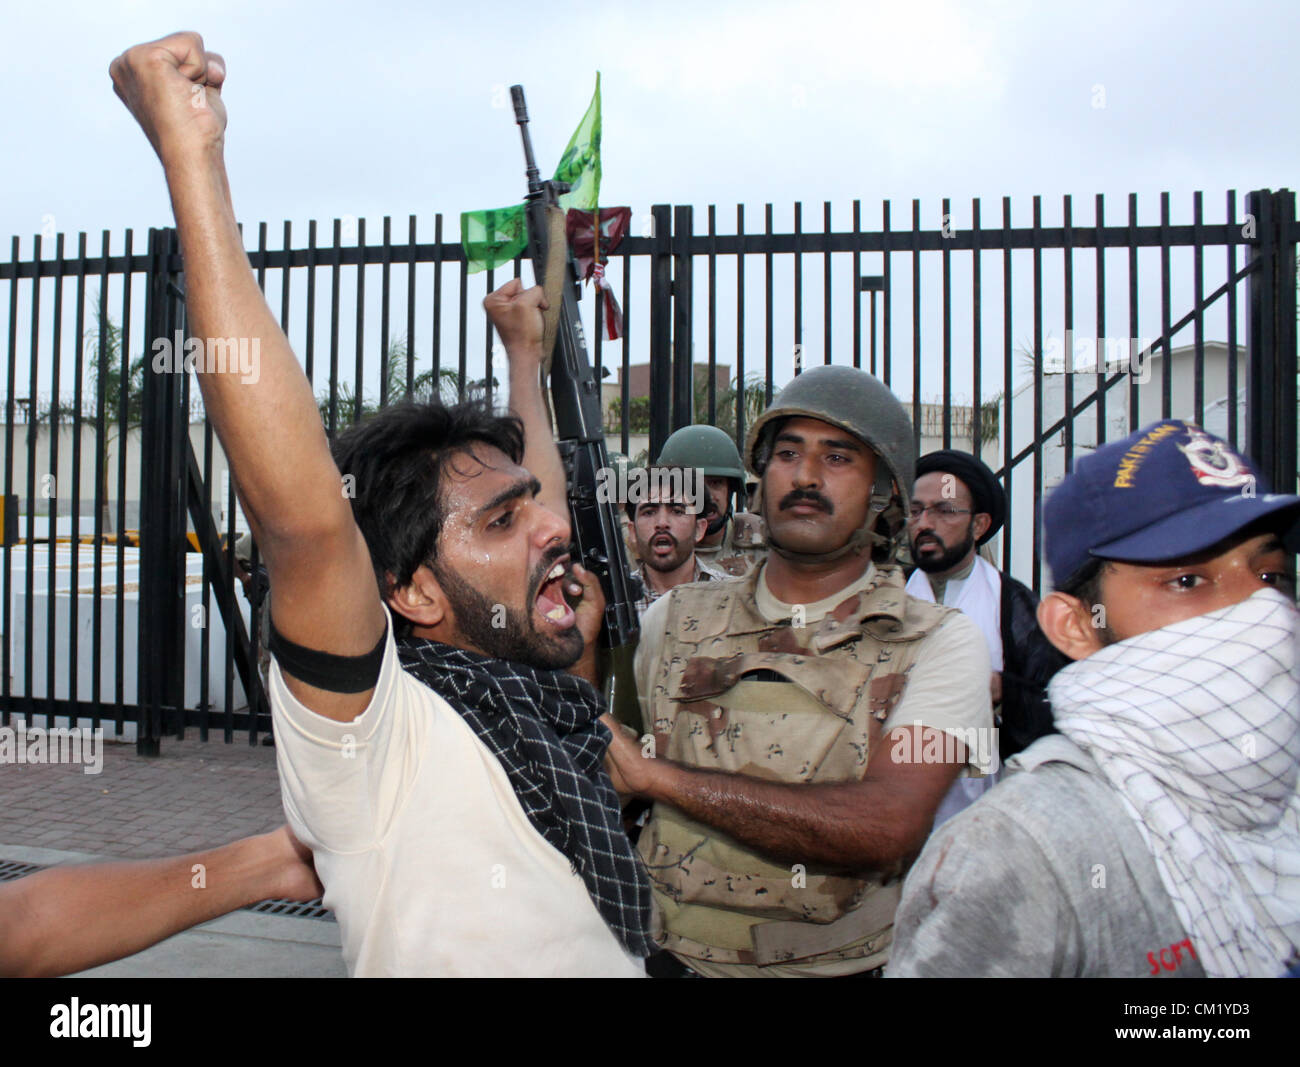 Les musulmans chiites pakistanais protester contre le film blasphématoire à l'extérieur du consulat des États-Unis à Karachi. Banque D'Images